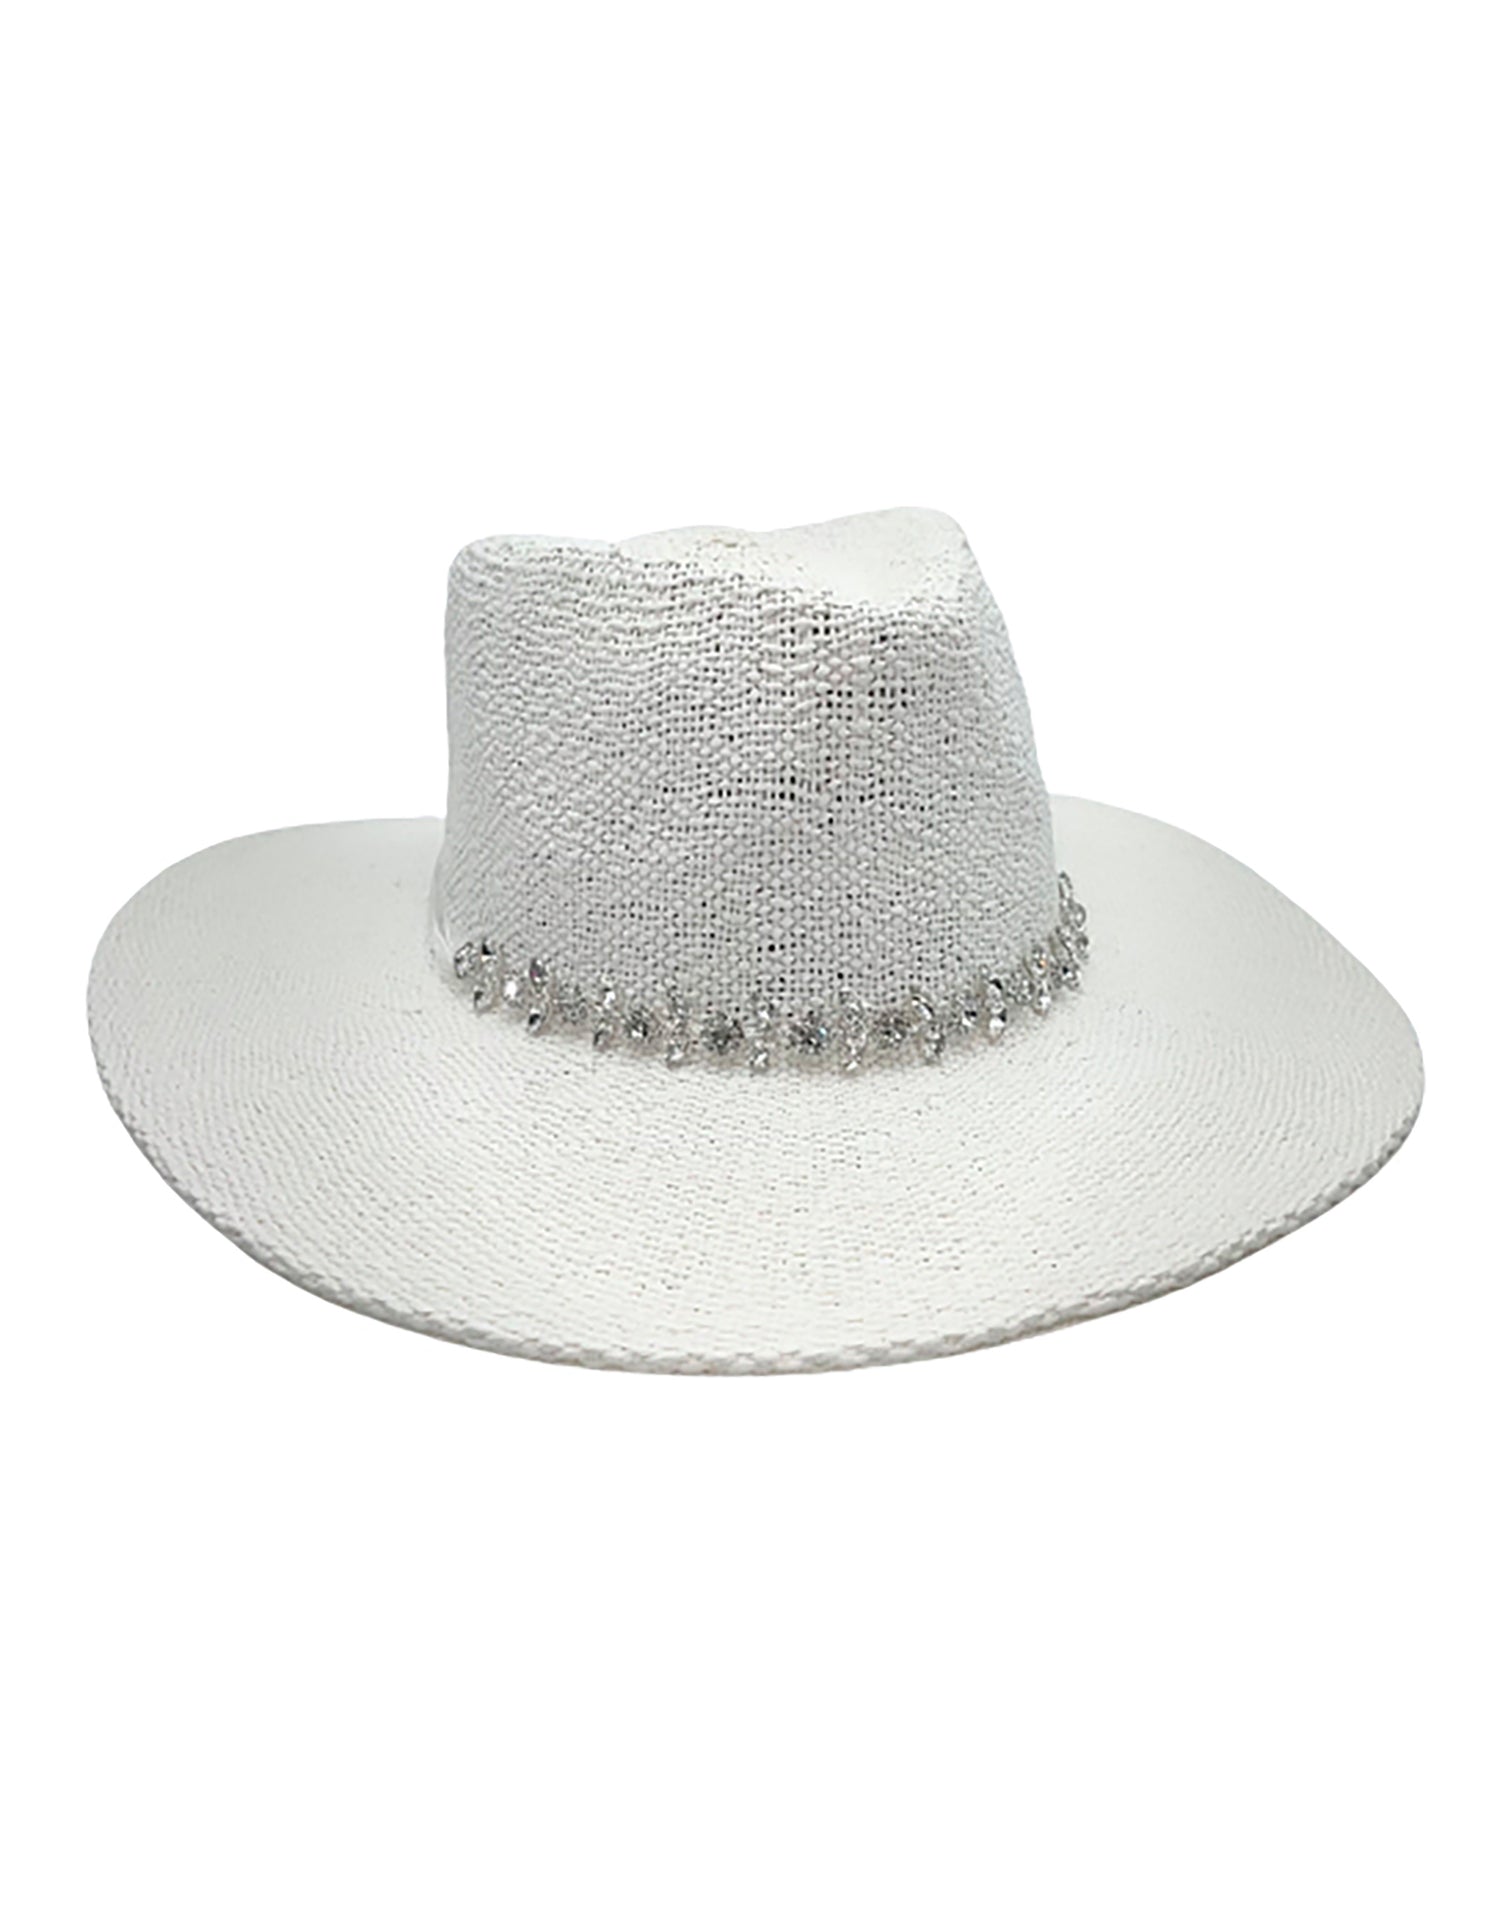 Mahina Hat by Nikki Beach in White - Angled View